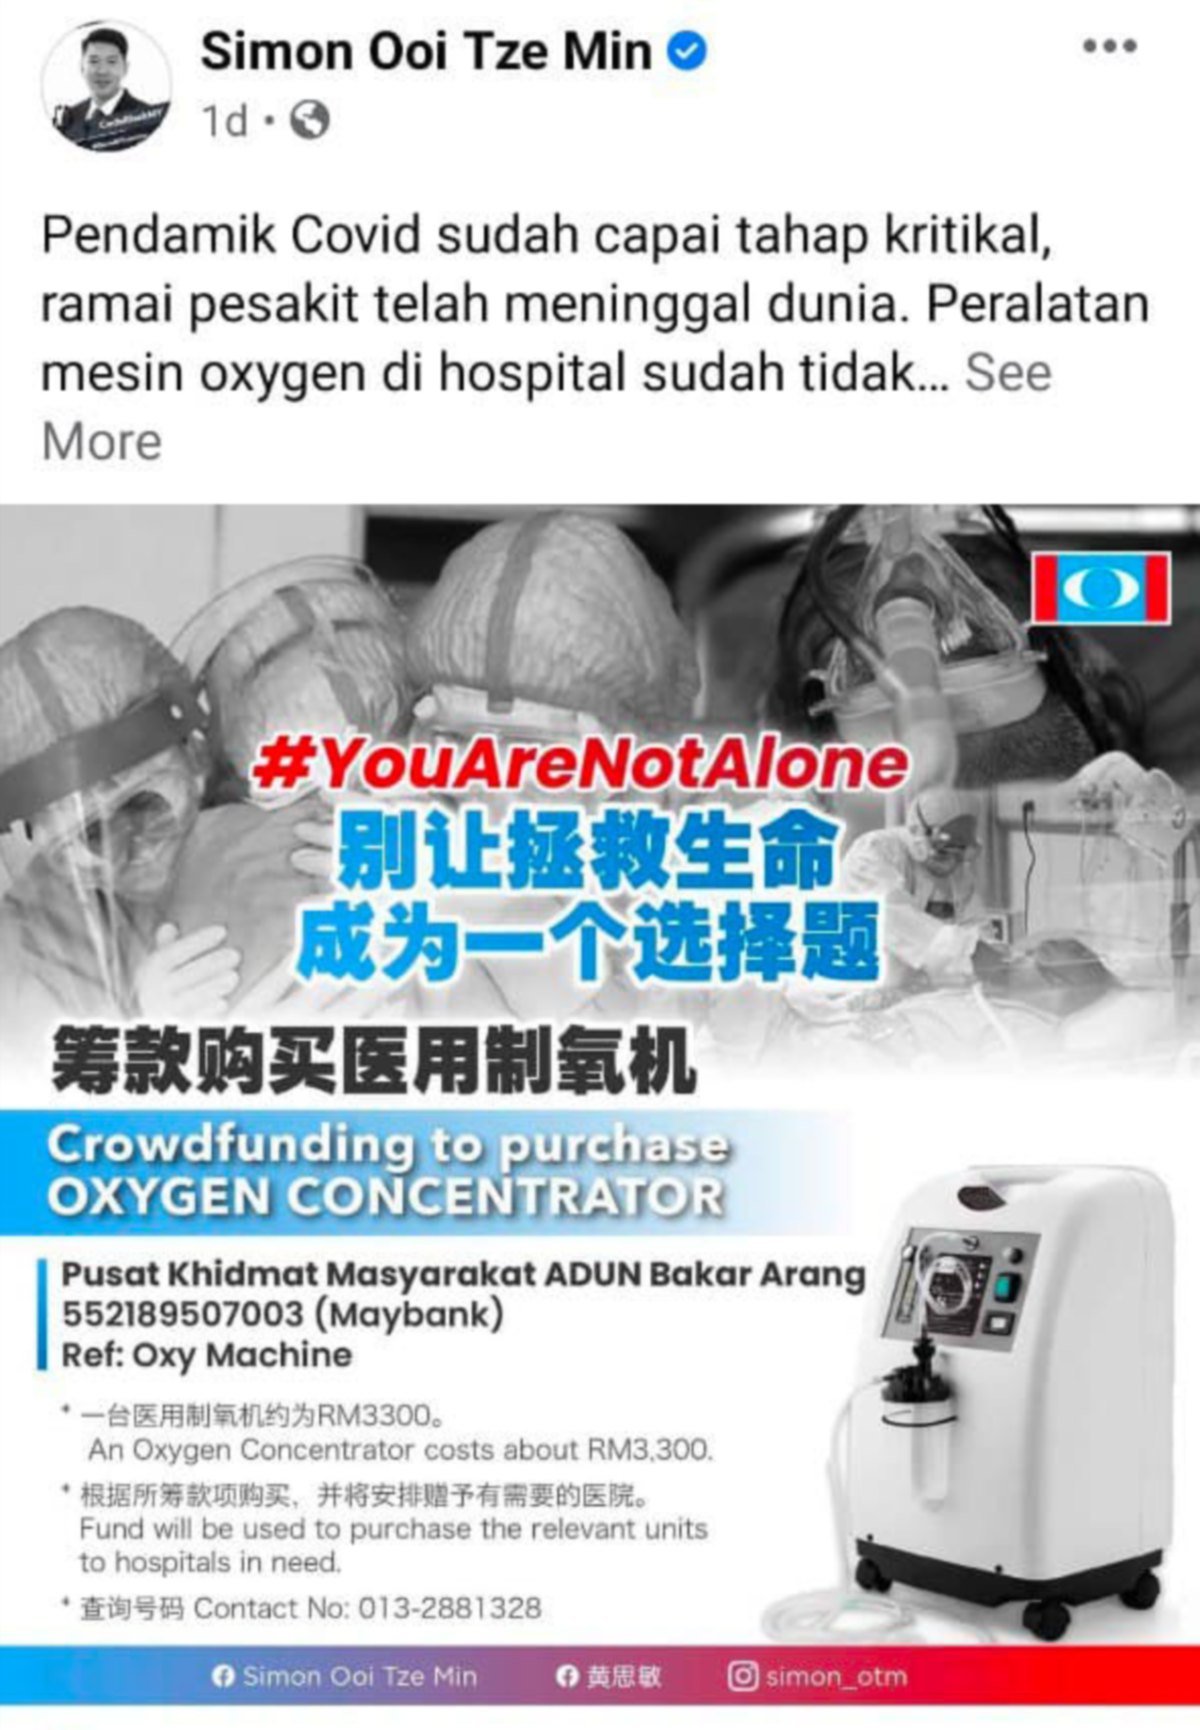 ADUN Bakar Arang, Ooi Tze Min, menerusi hantaran di Facebook semalam mendakwa peralatan mesin oksigen di hospital sudah tidak cukup.FOTO Facebook